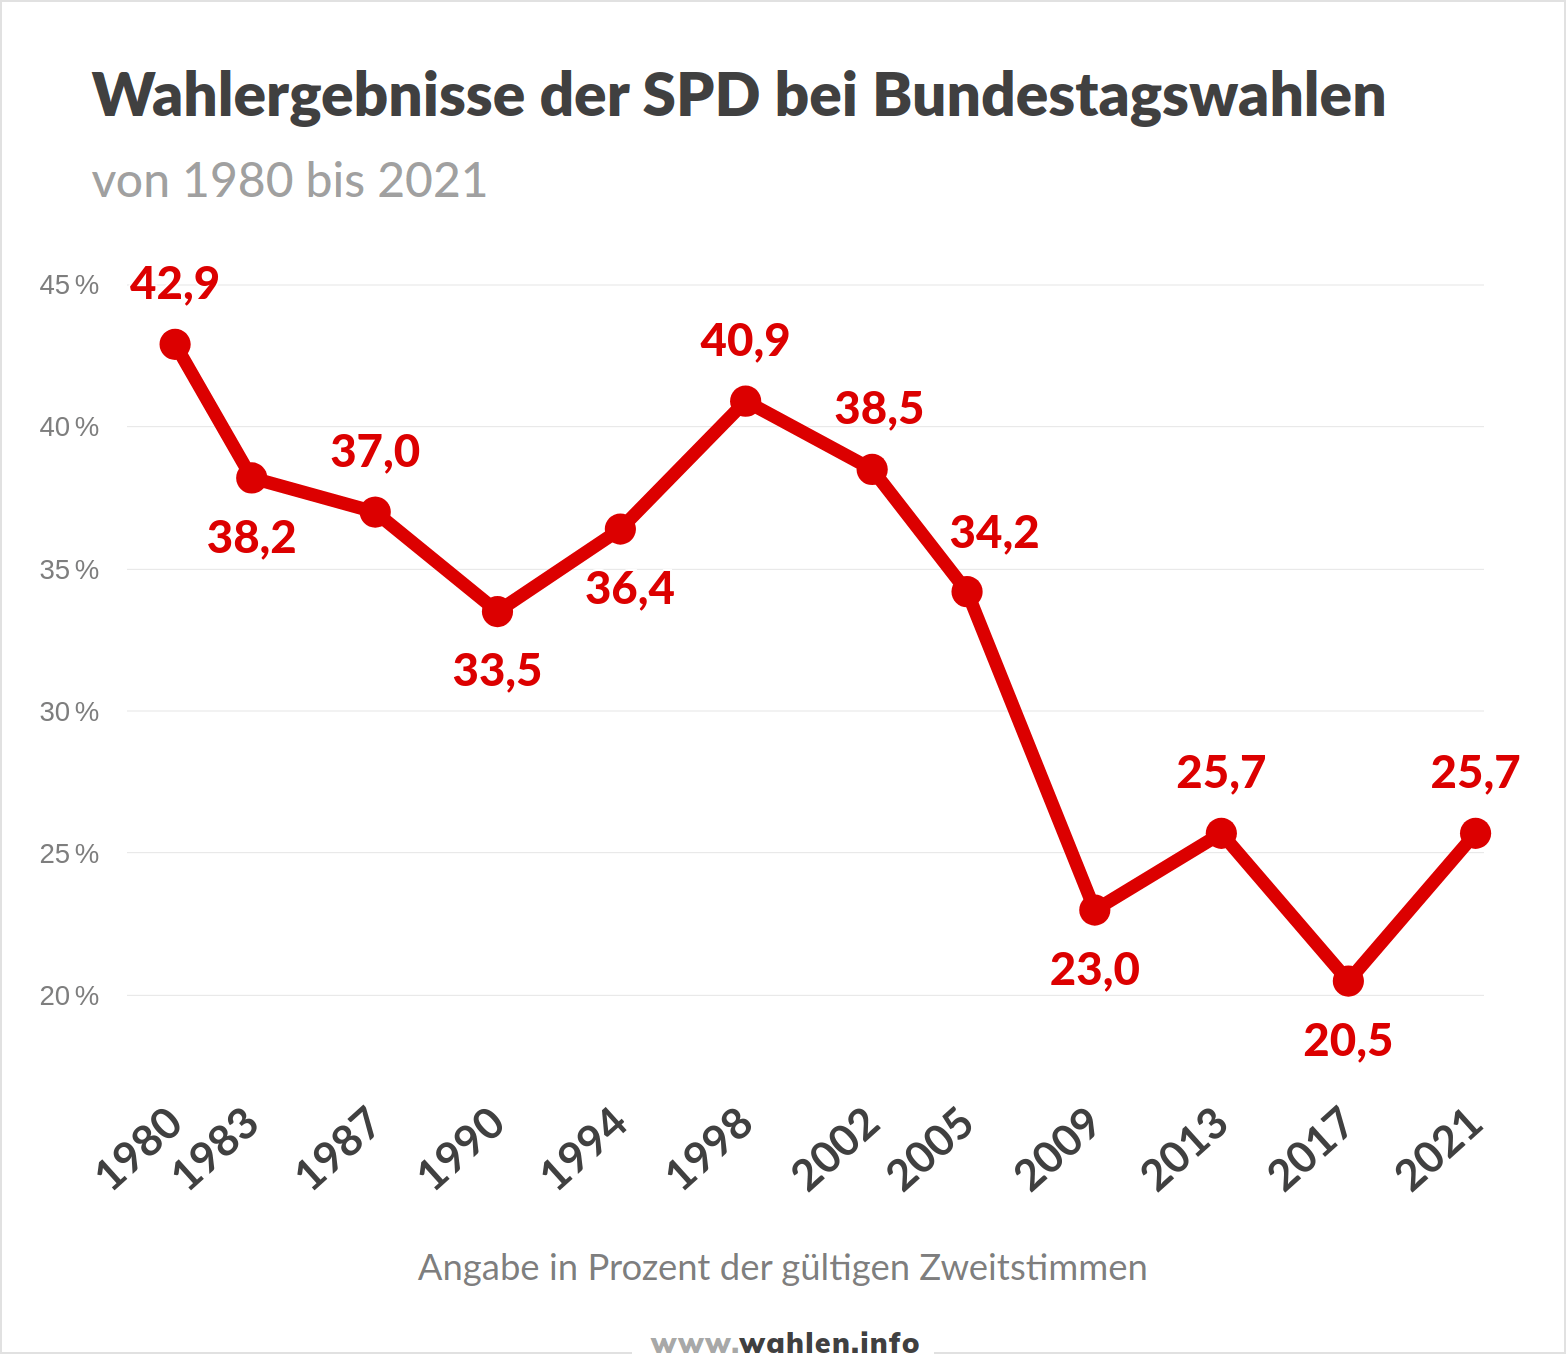 Wahlergebnisse der SPD bei Bundestagswahlen bis 2021 (ohne 2025)